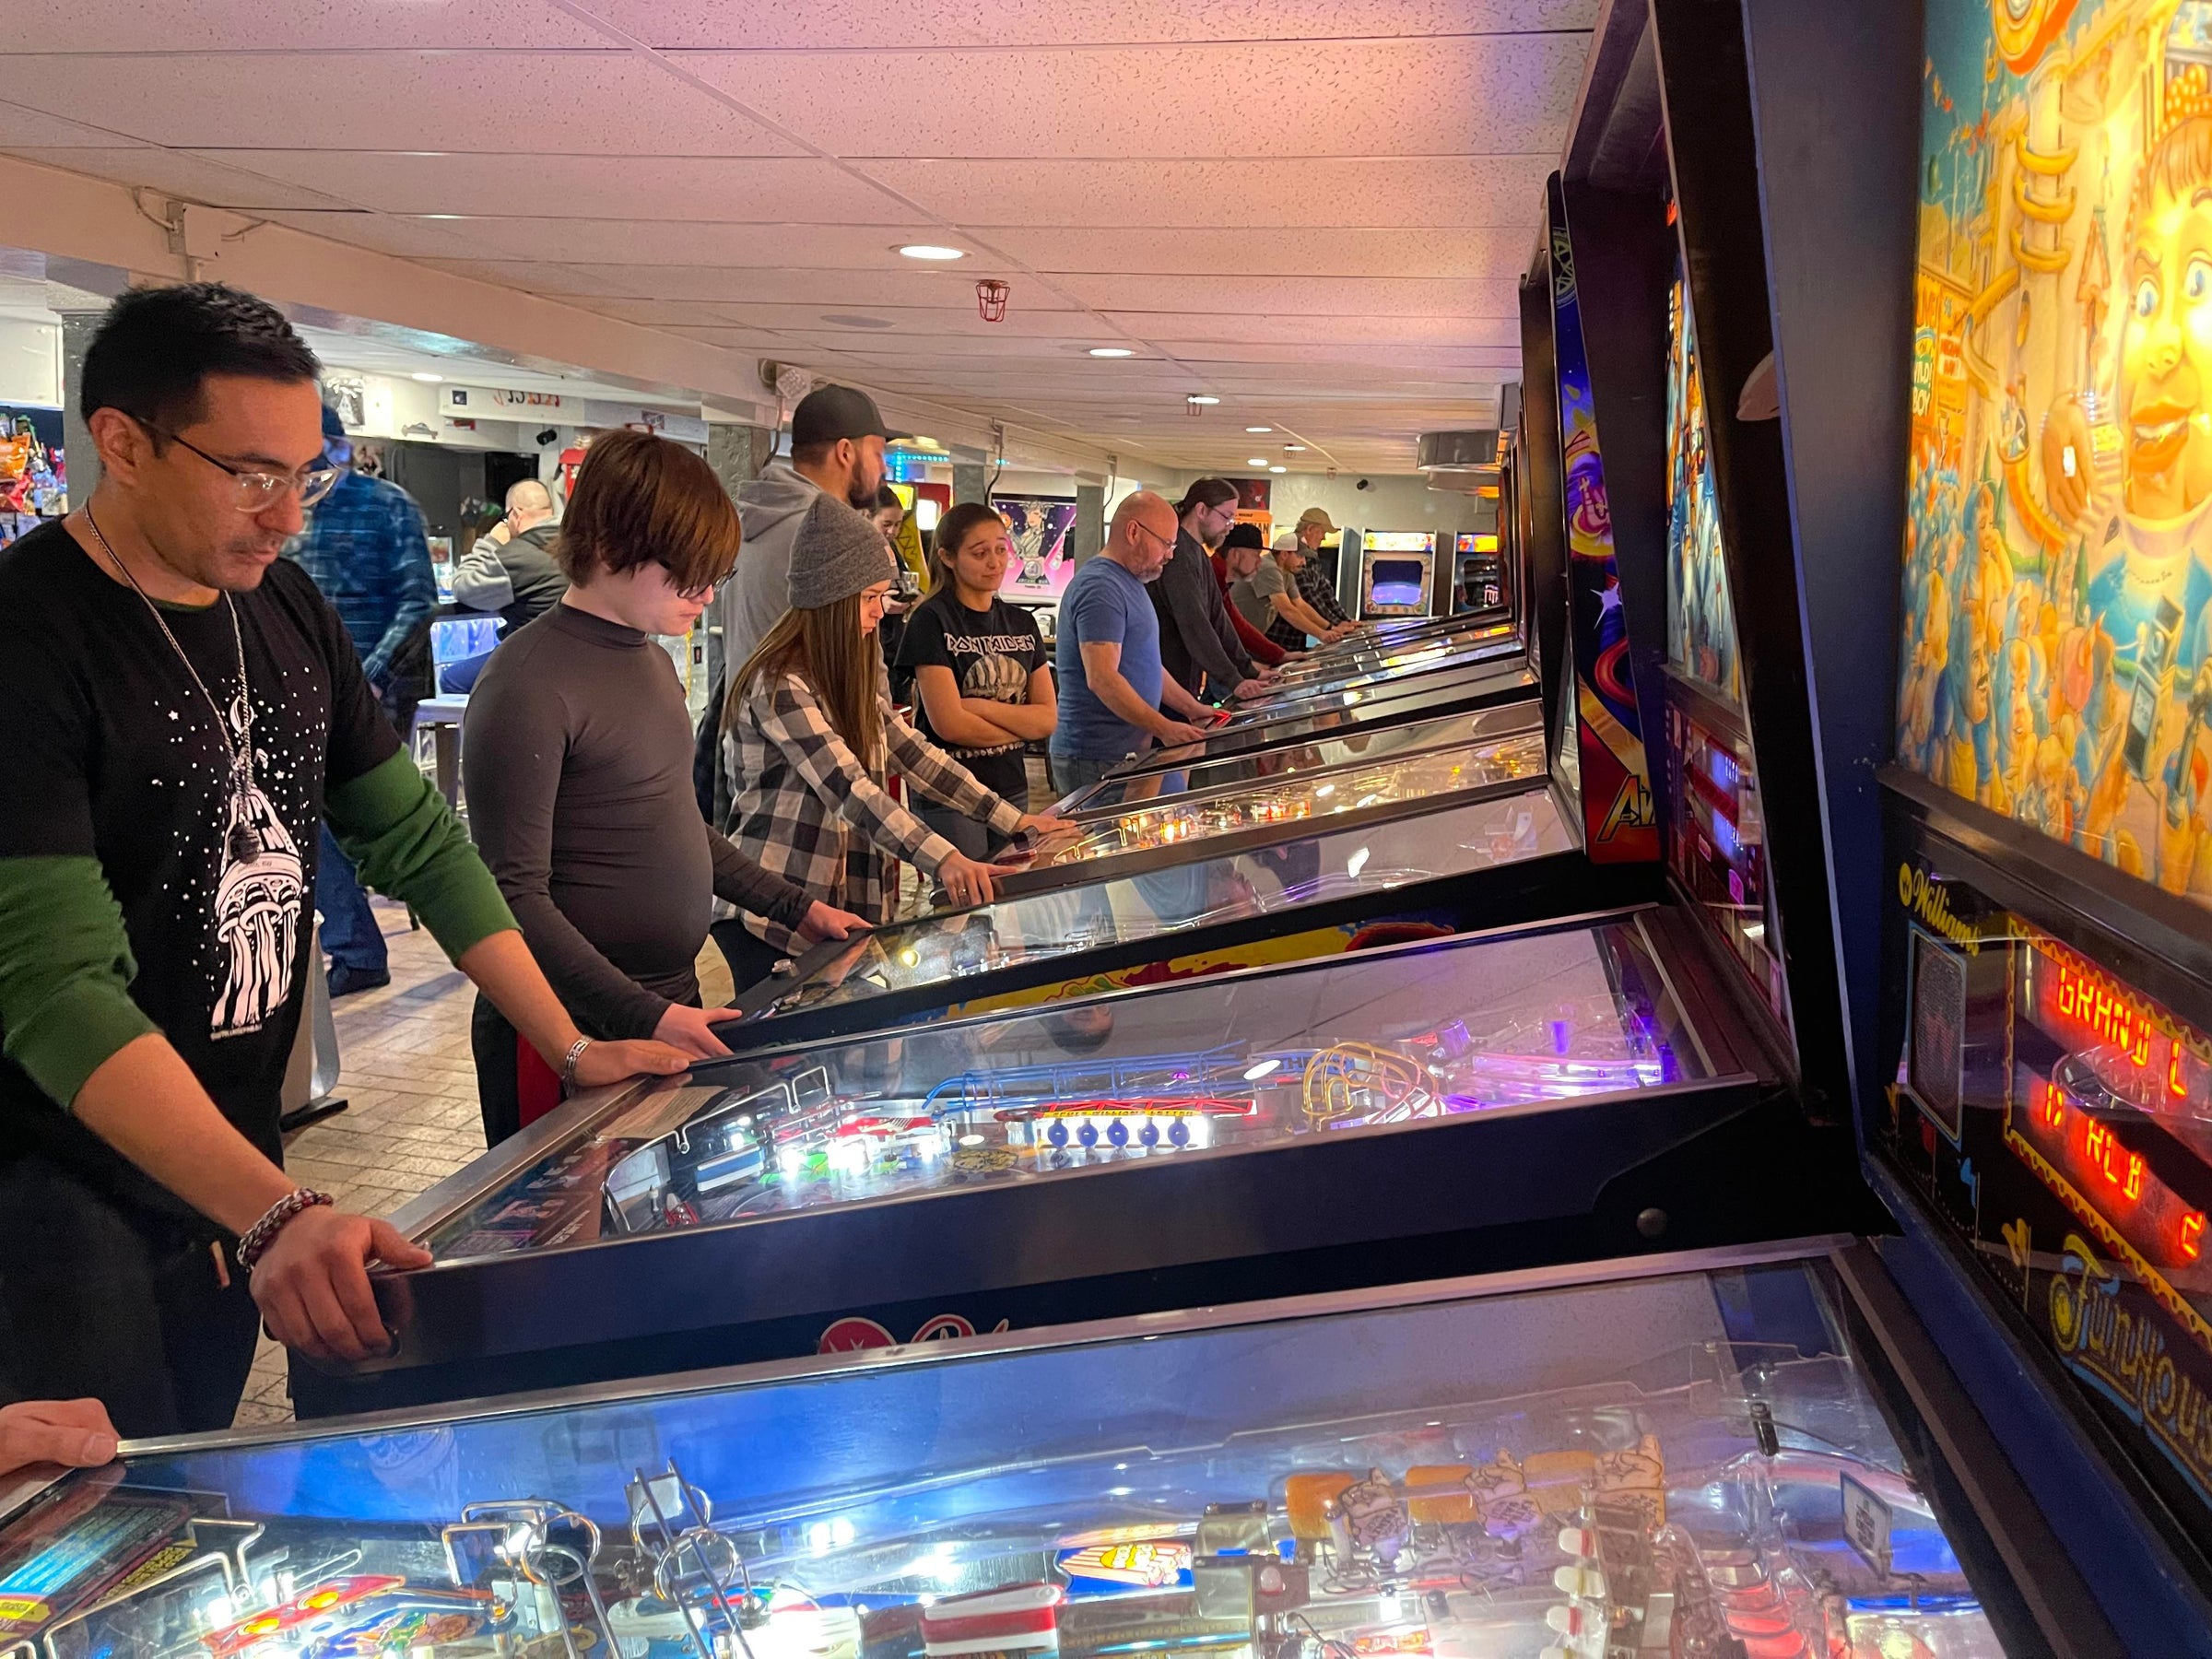 Flip-A-Coin Arcade Bar, Pueblo, CO